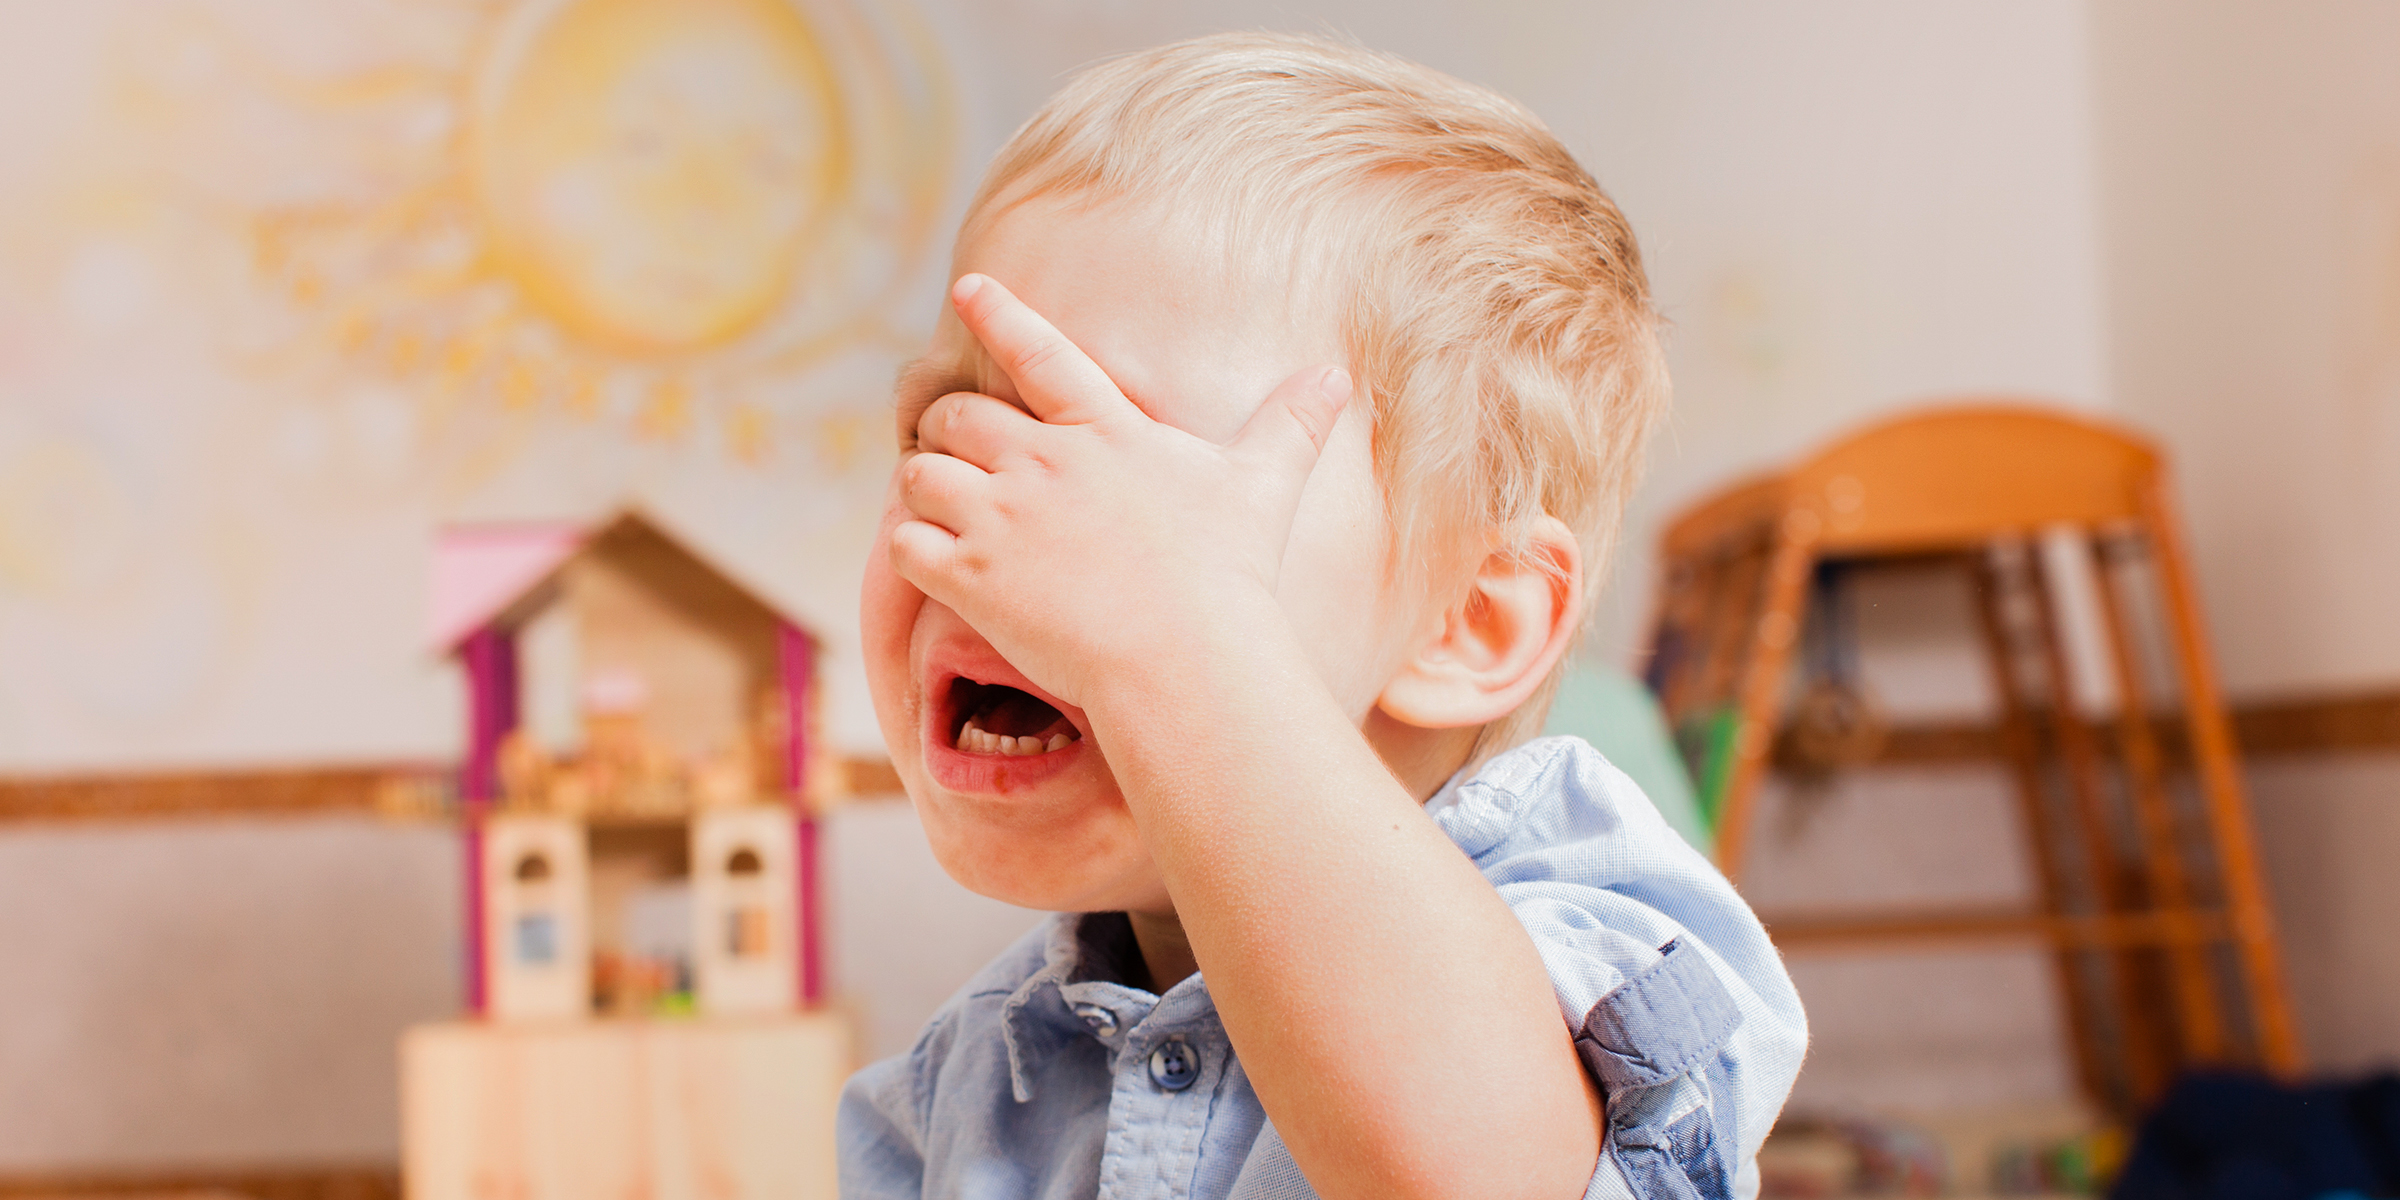 Un niño tapándose la cara y llorando | Fuente: Shutterstock